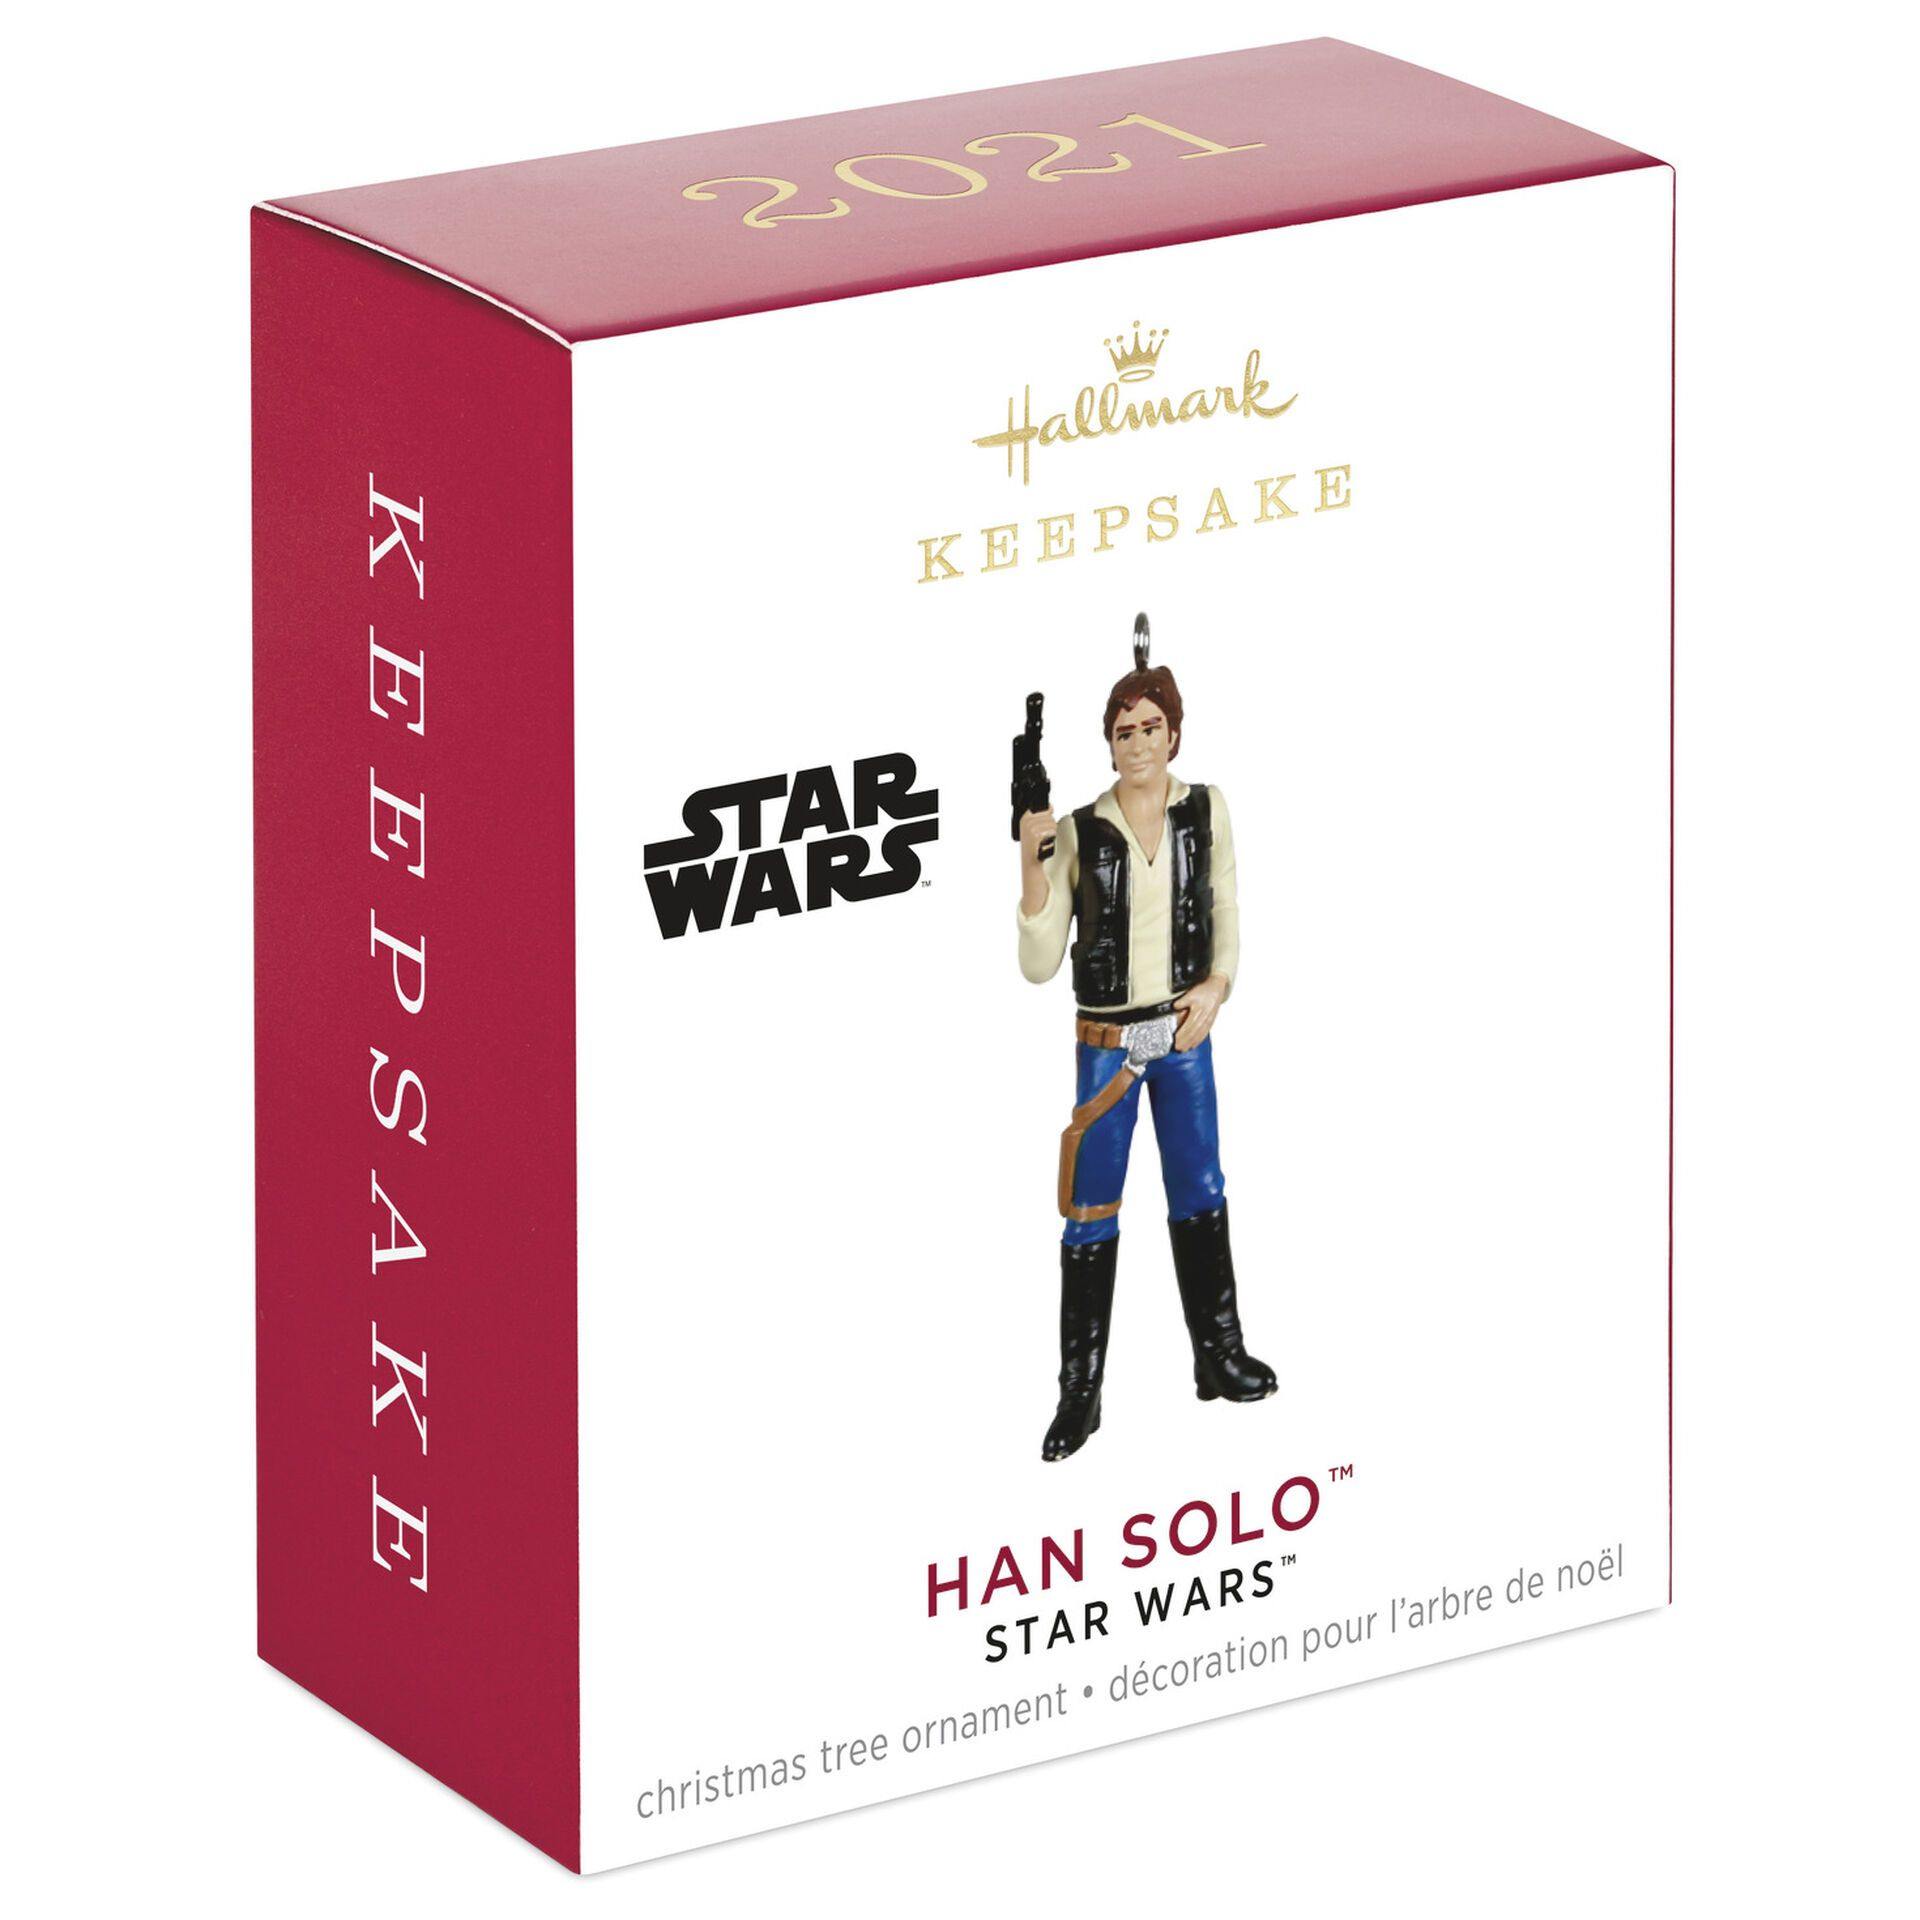 Mini Star Wars™ Han Solo™ Ornament, 1.69"